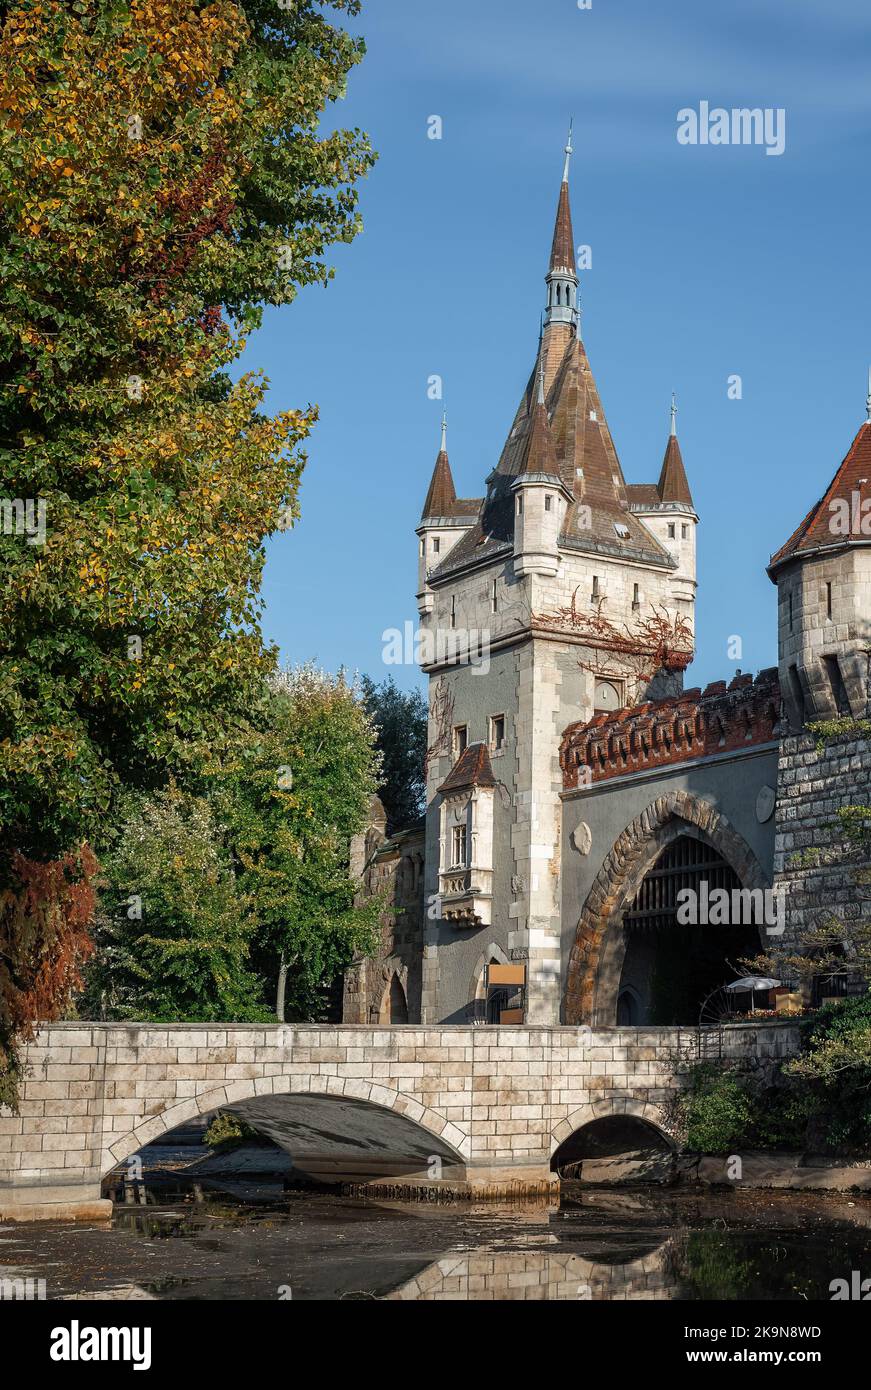 Gatehouse Tower at Vajdahunyad Castle - Budapest, Hungary Stock Photo